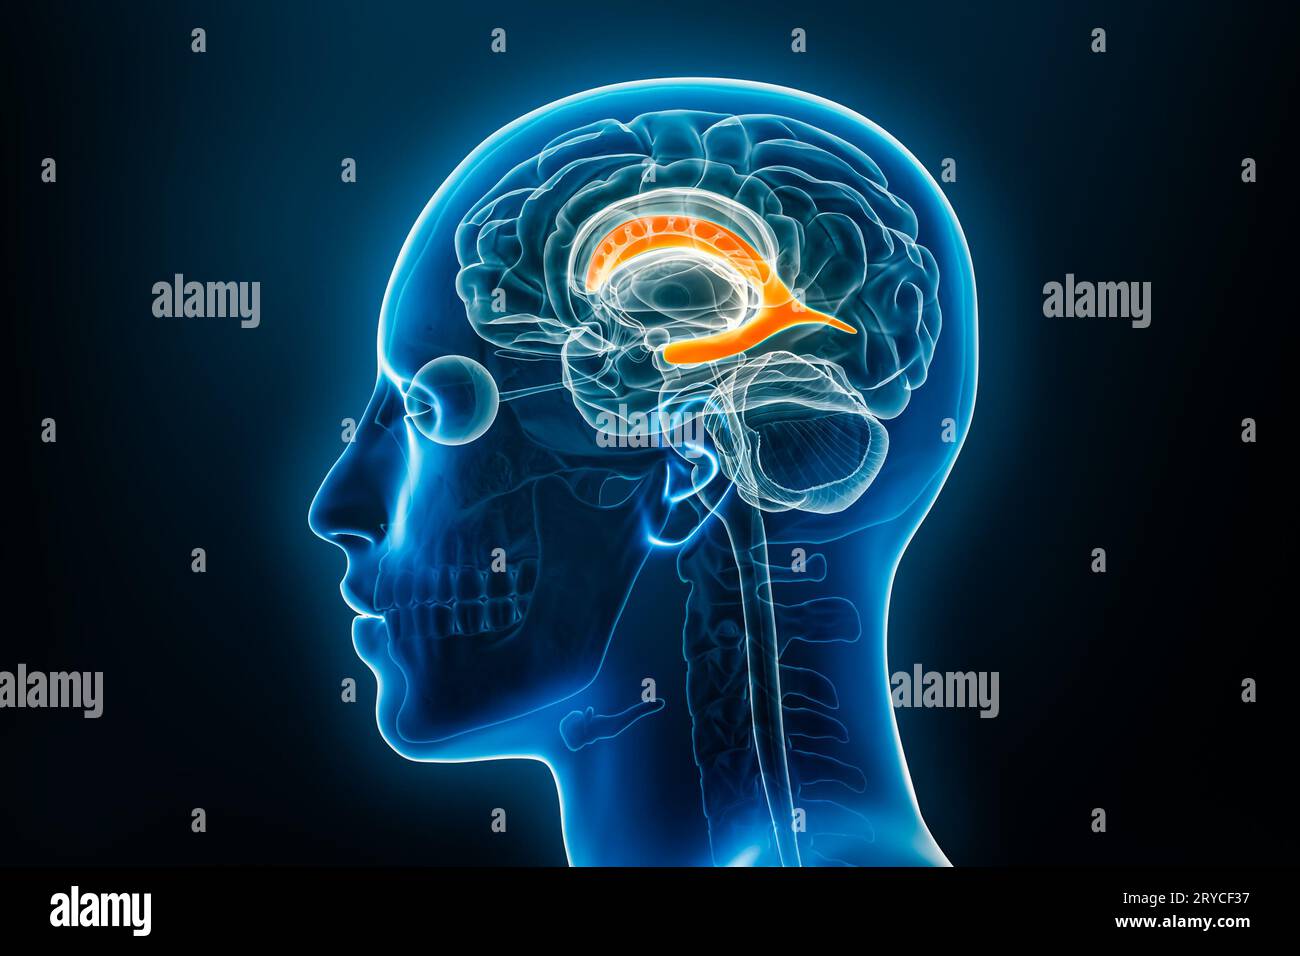 Vue du profil radiologique du ventricule latéral cérébral en 3D avec contours du corps masculin. Anatomie humaine, médecine, biologie, science, neurosciences Banque D'Images